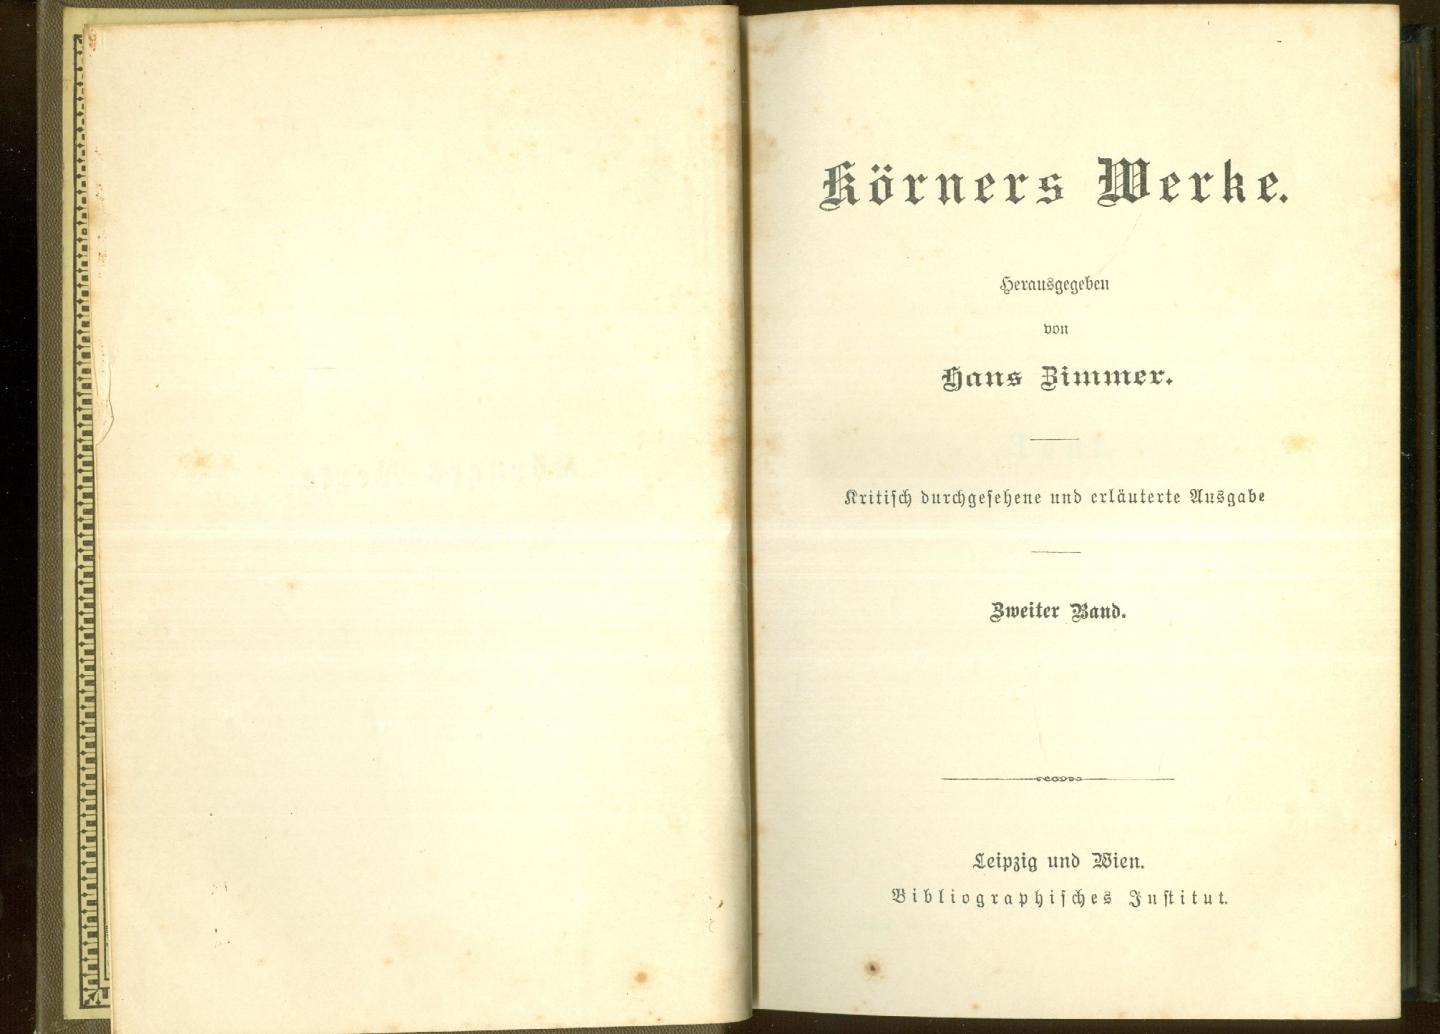 Körner, Theodor - Körners Werke in twee banden